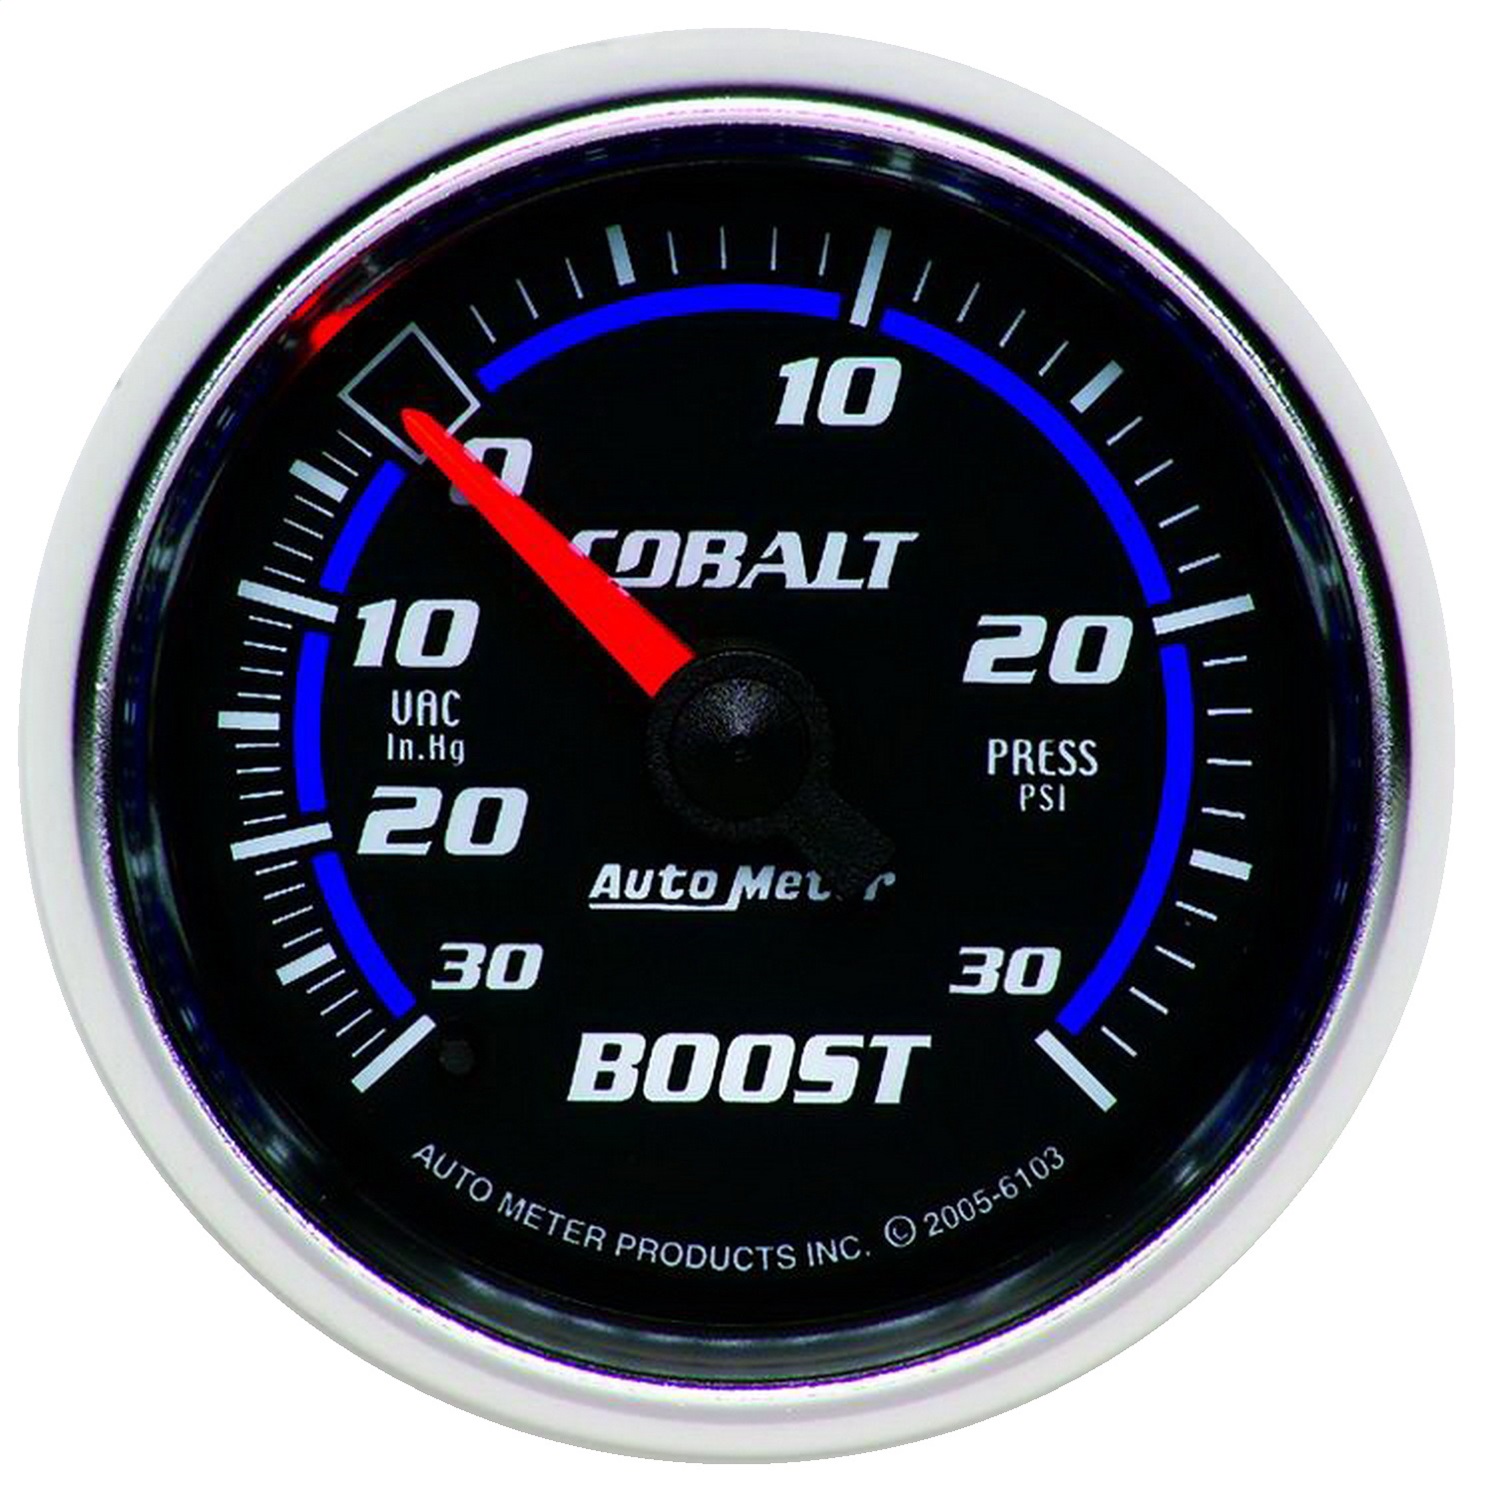 Auto Meter Auto Meter 6103 Cobalt; Mechanical Boost/Vacuum Gauge